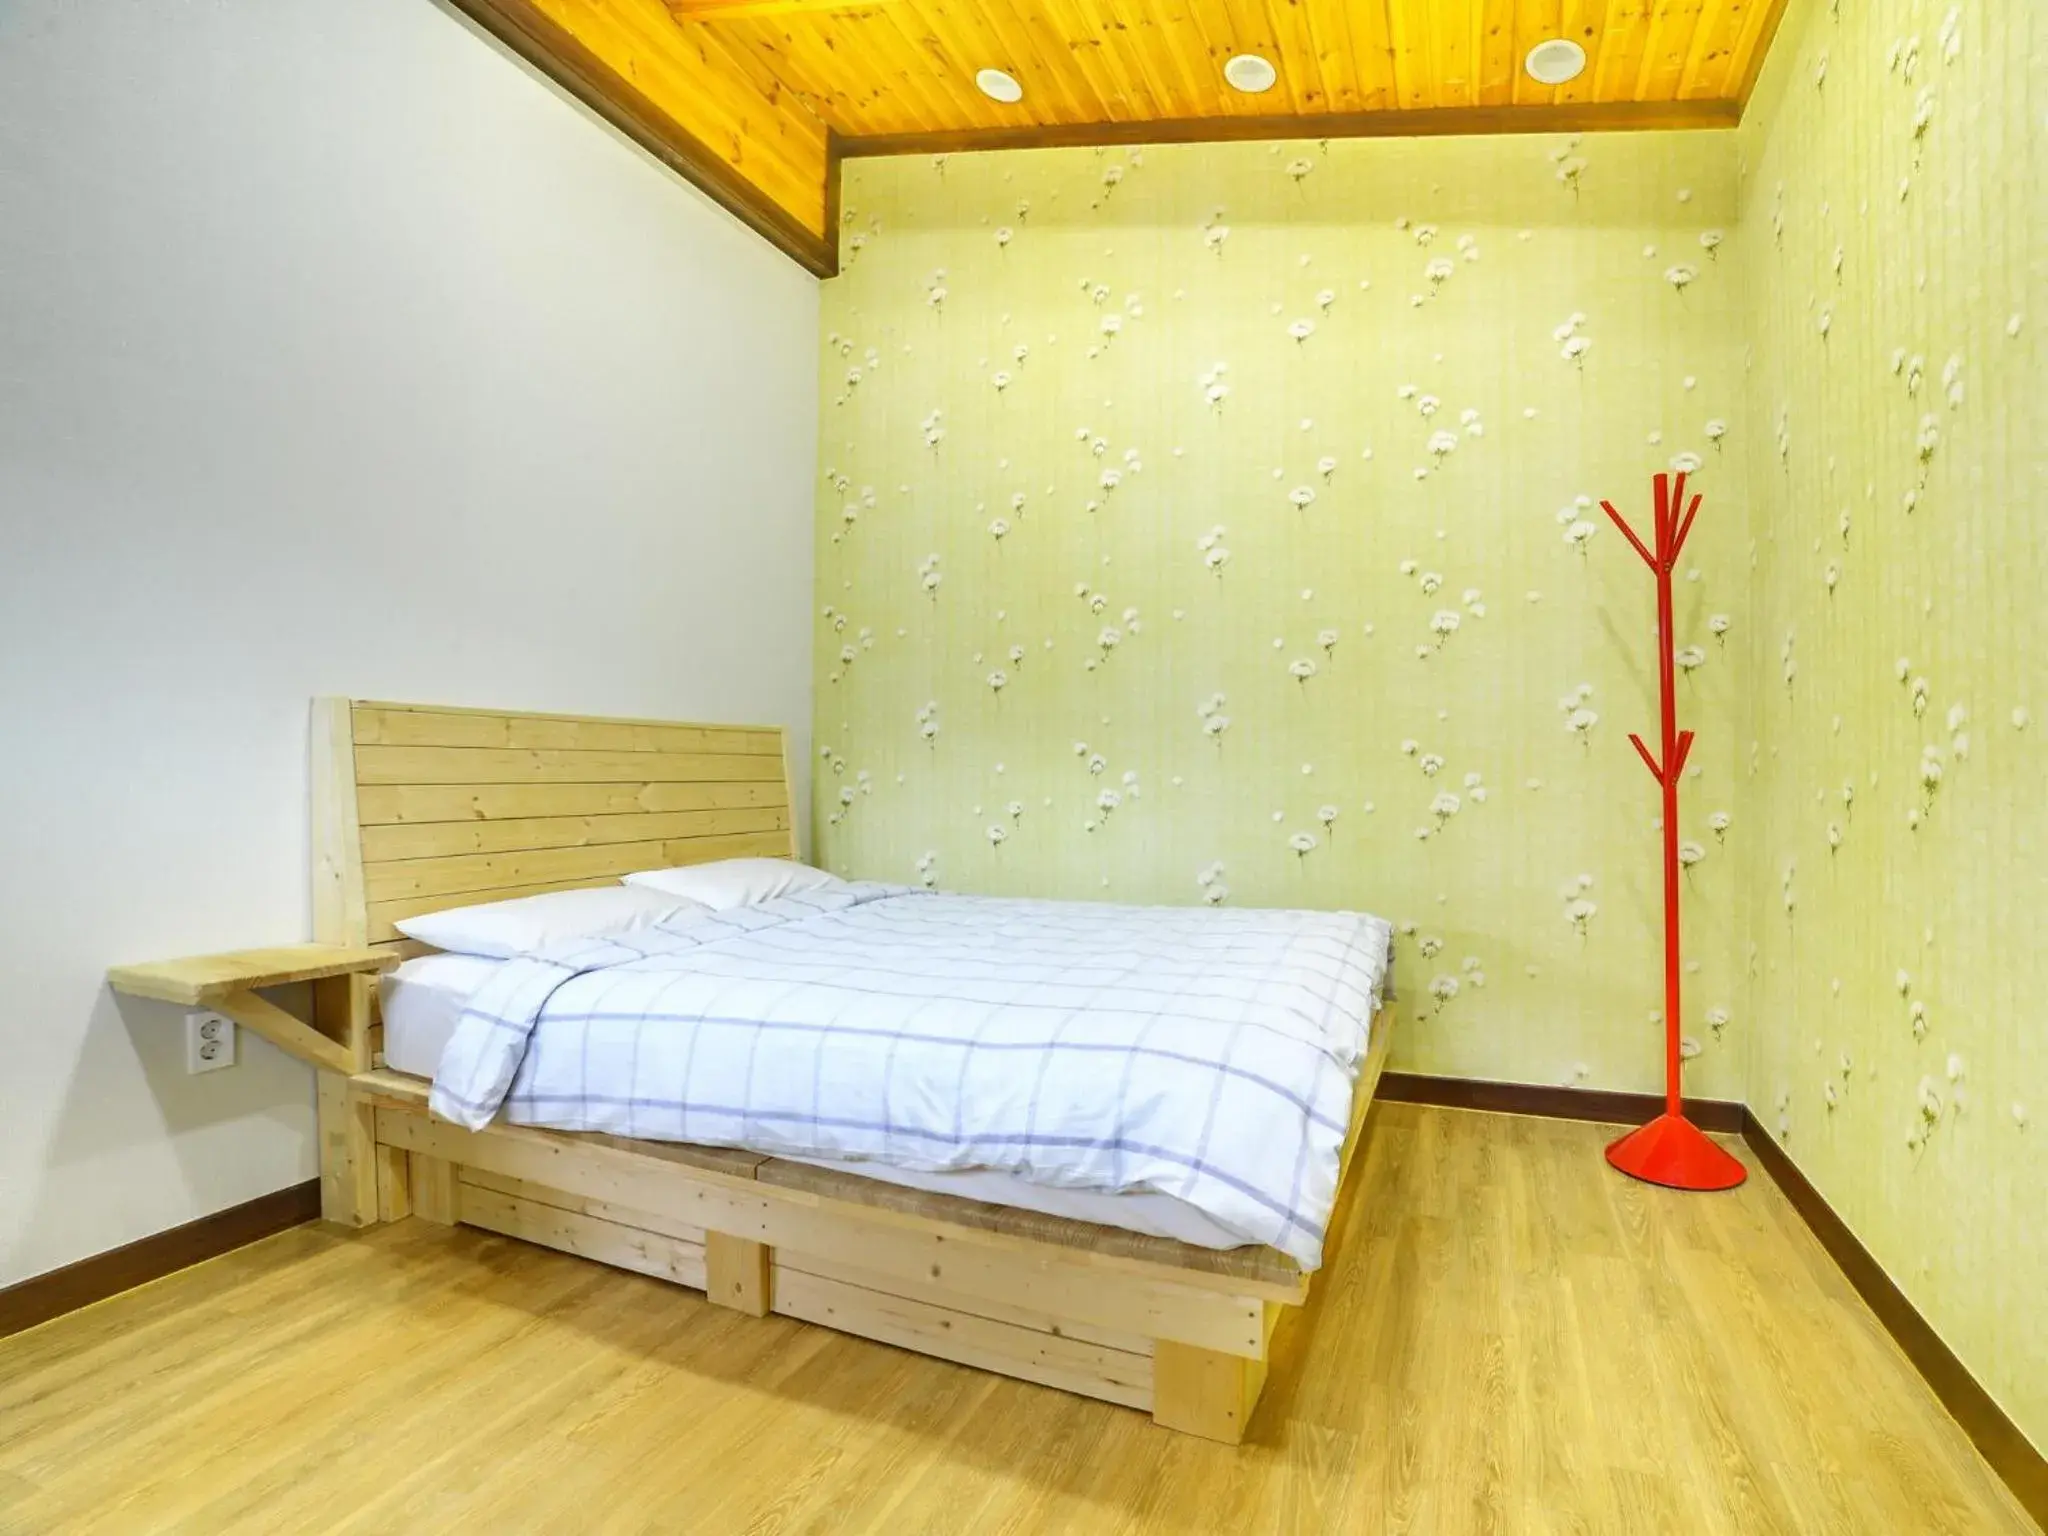 Bedroom, Room Photo in White Cabin